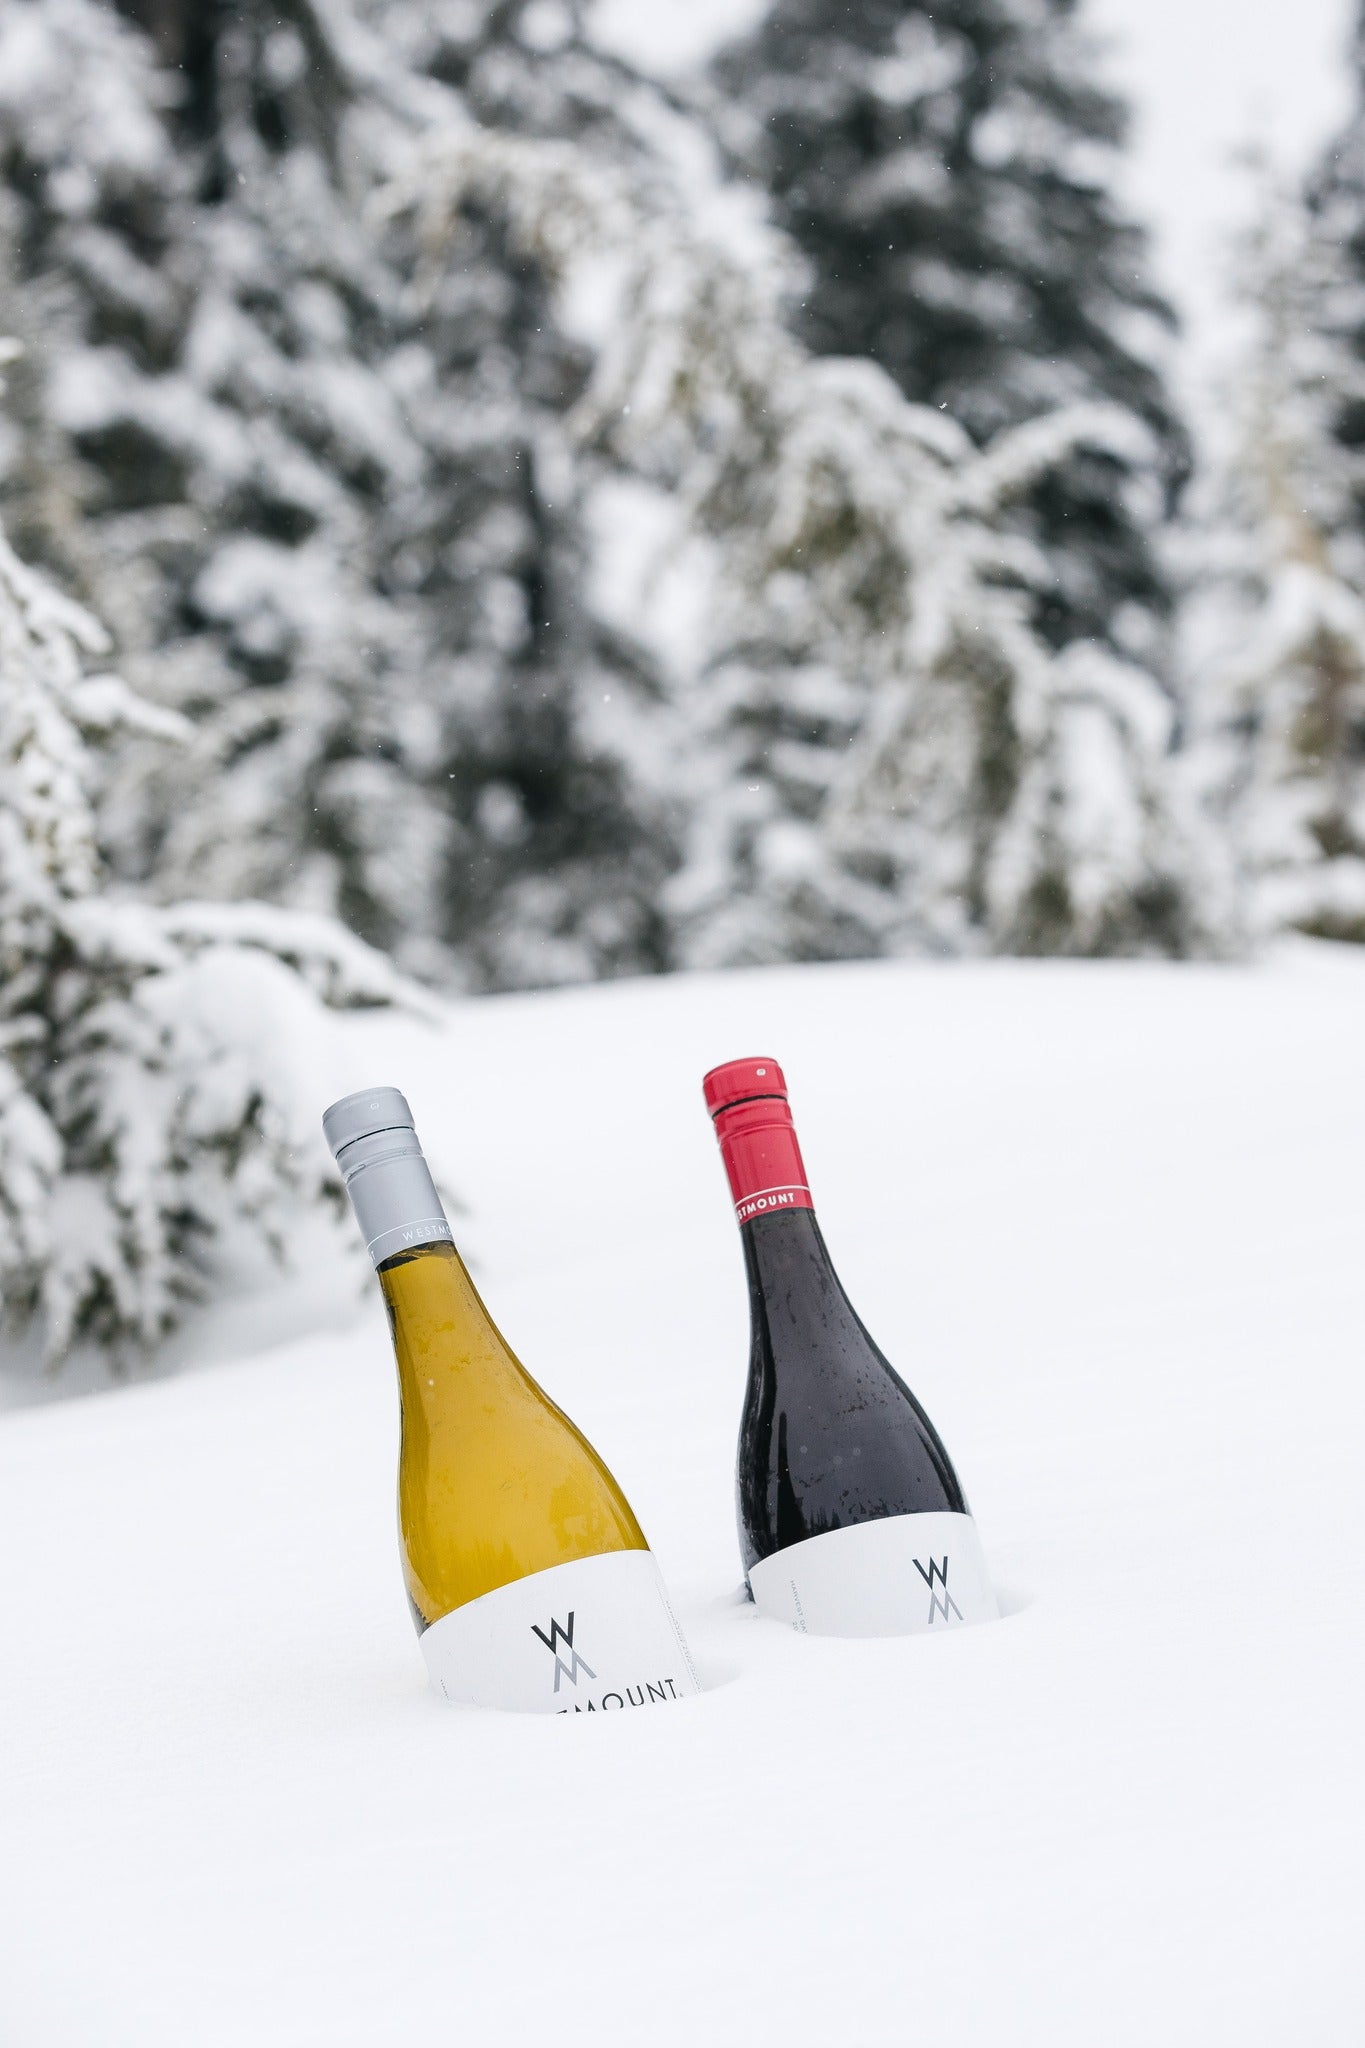 Westmount Pinot Noir Willamette Valley